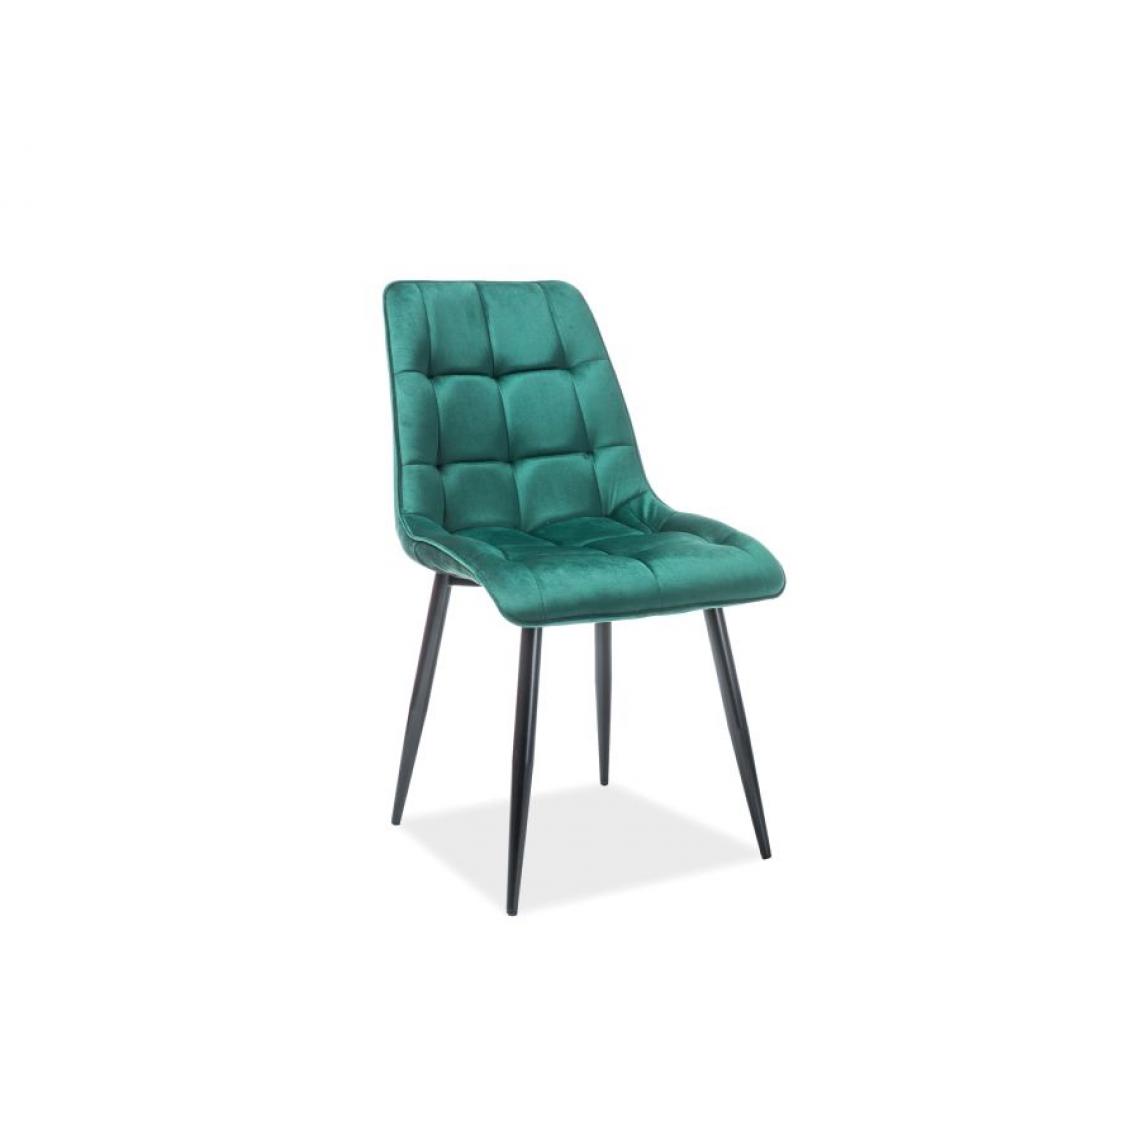 Hucoco - CONE | Chaise moderne matelassé salon bureau | Dimensions 89x51x44cm | Rembourrage en velours | Pieds en métal mats - Vert - Chaises